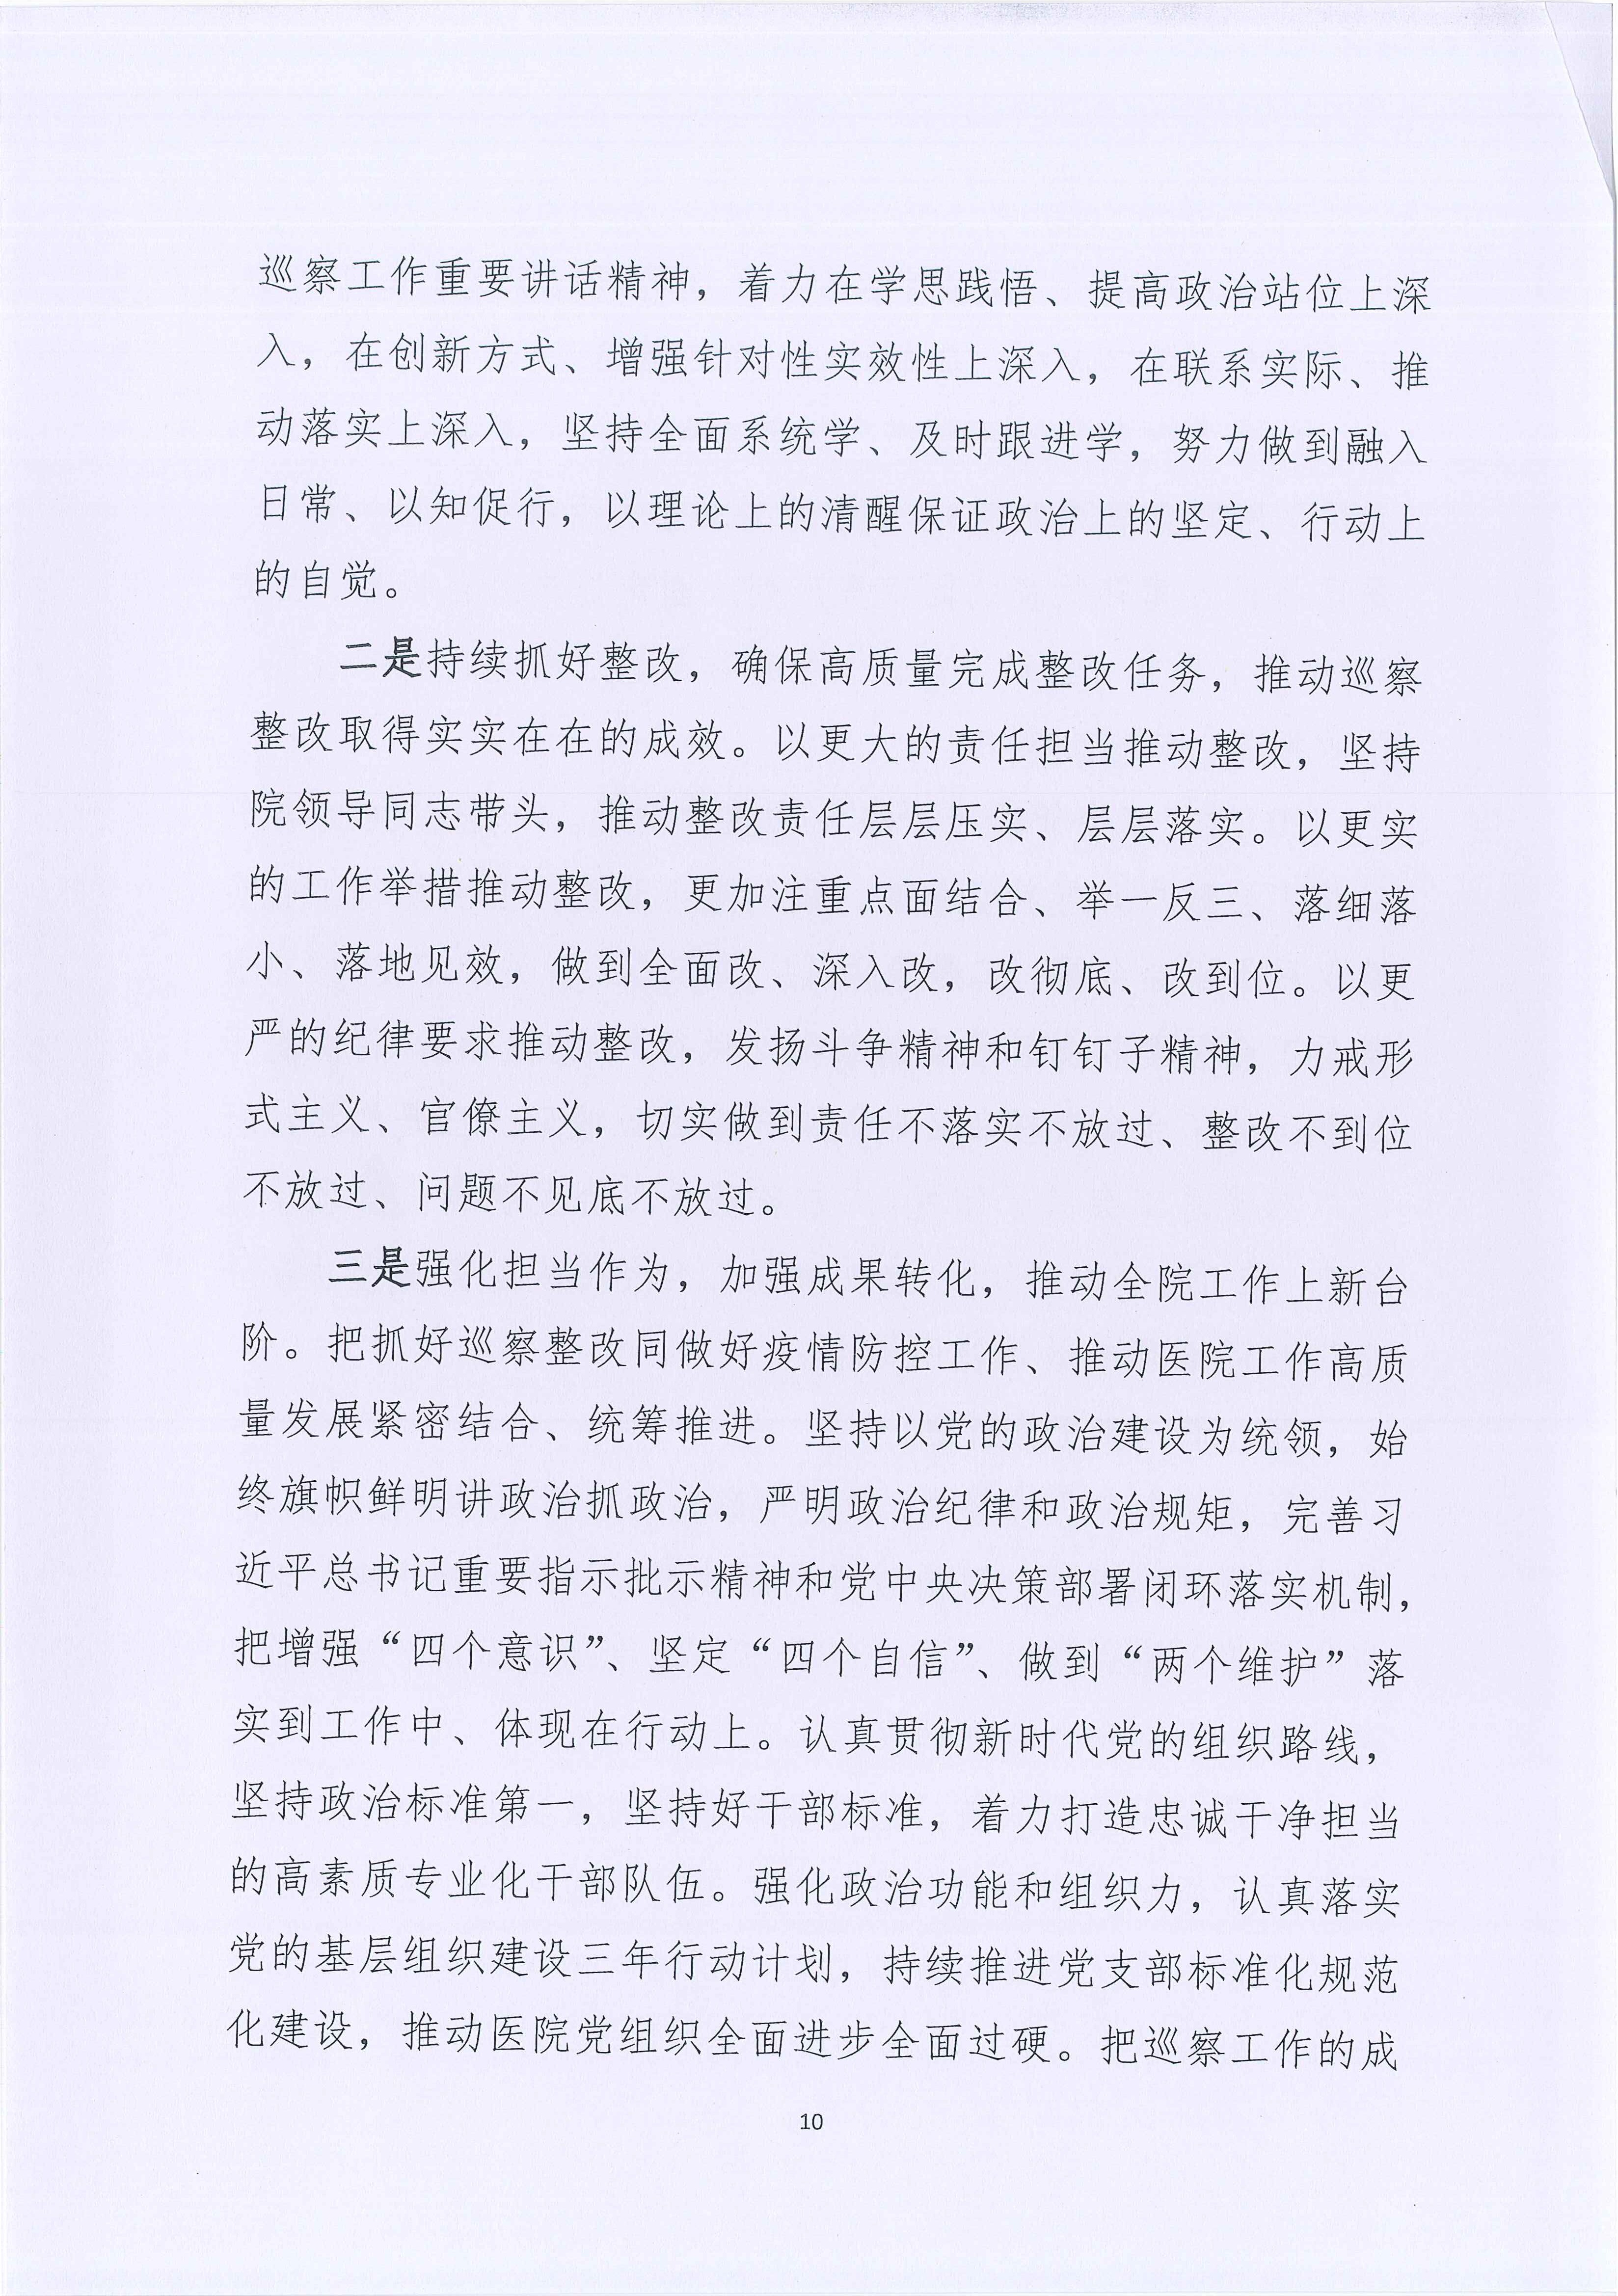 五华县人民医院关于巡察整改进展情况的通报_10